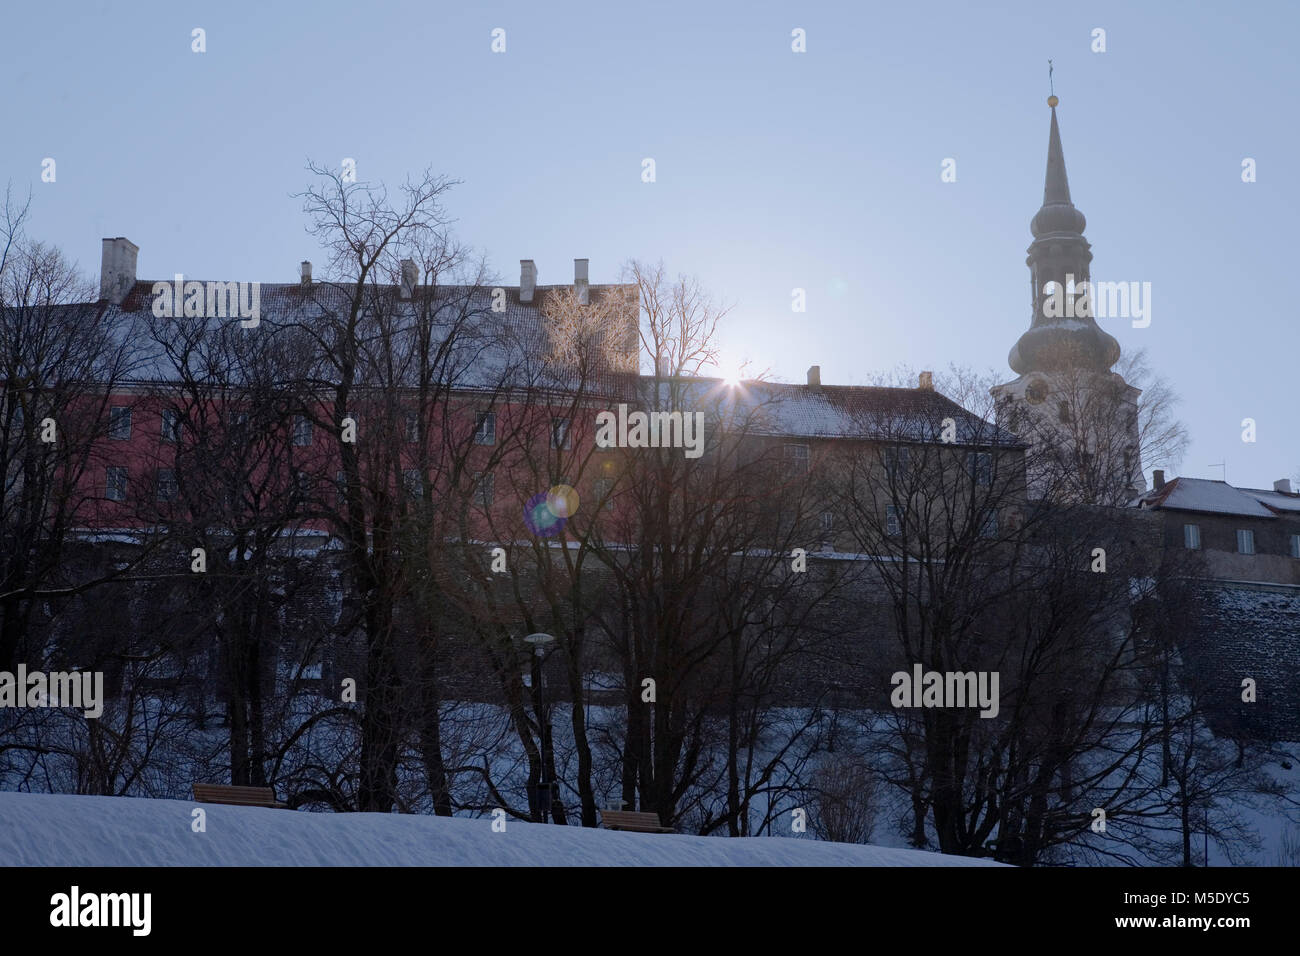 Tôt le matin dans la région de Toompark, Tallinn en hiver, avec la tour de Toomkirik dominant l'horizon Banque D'Images